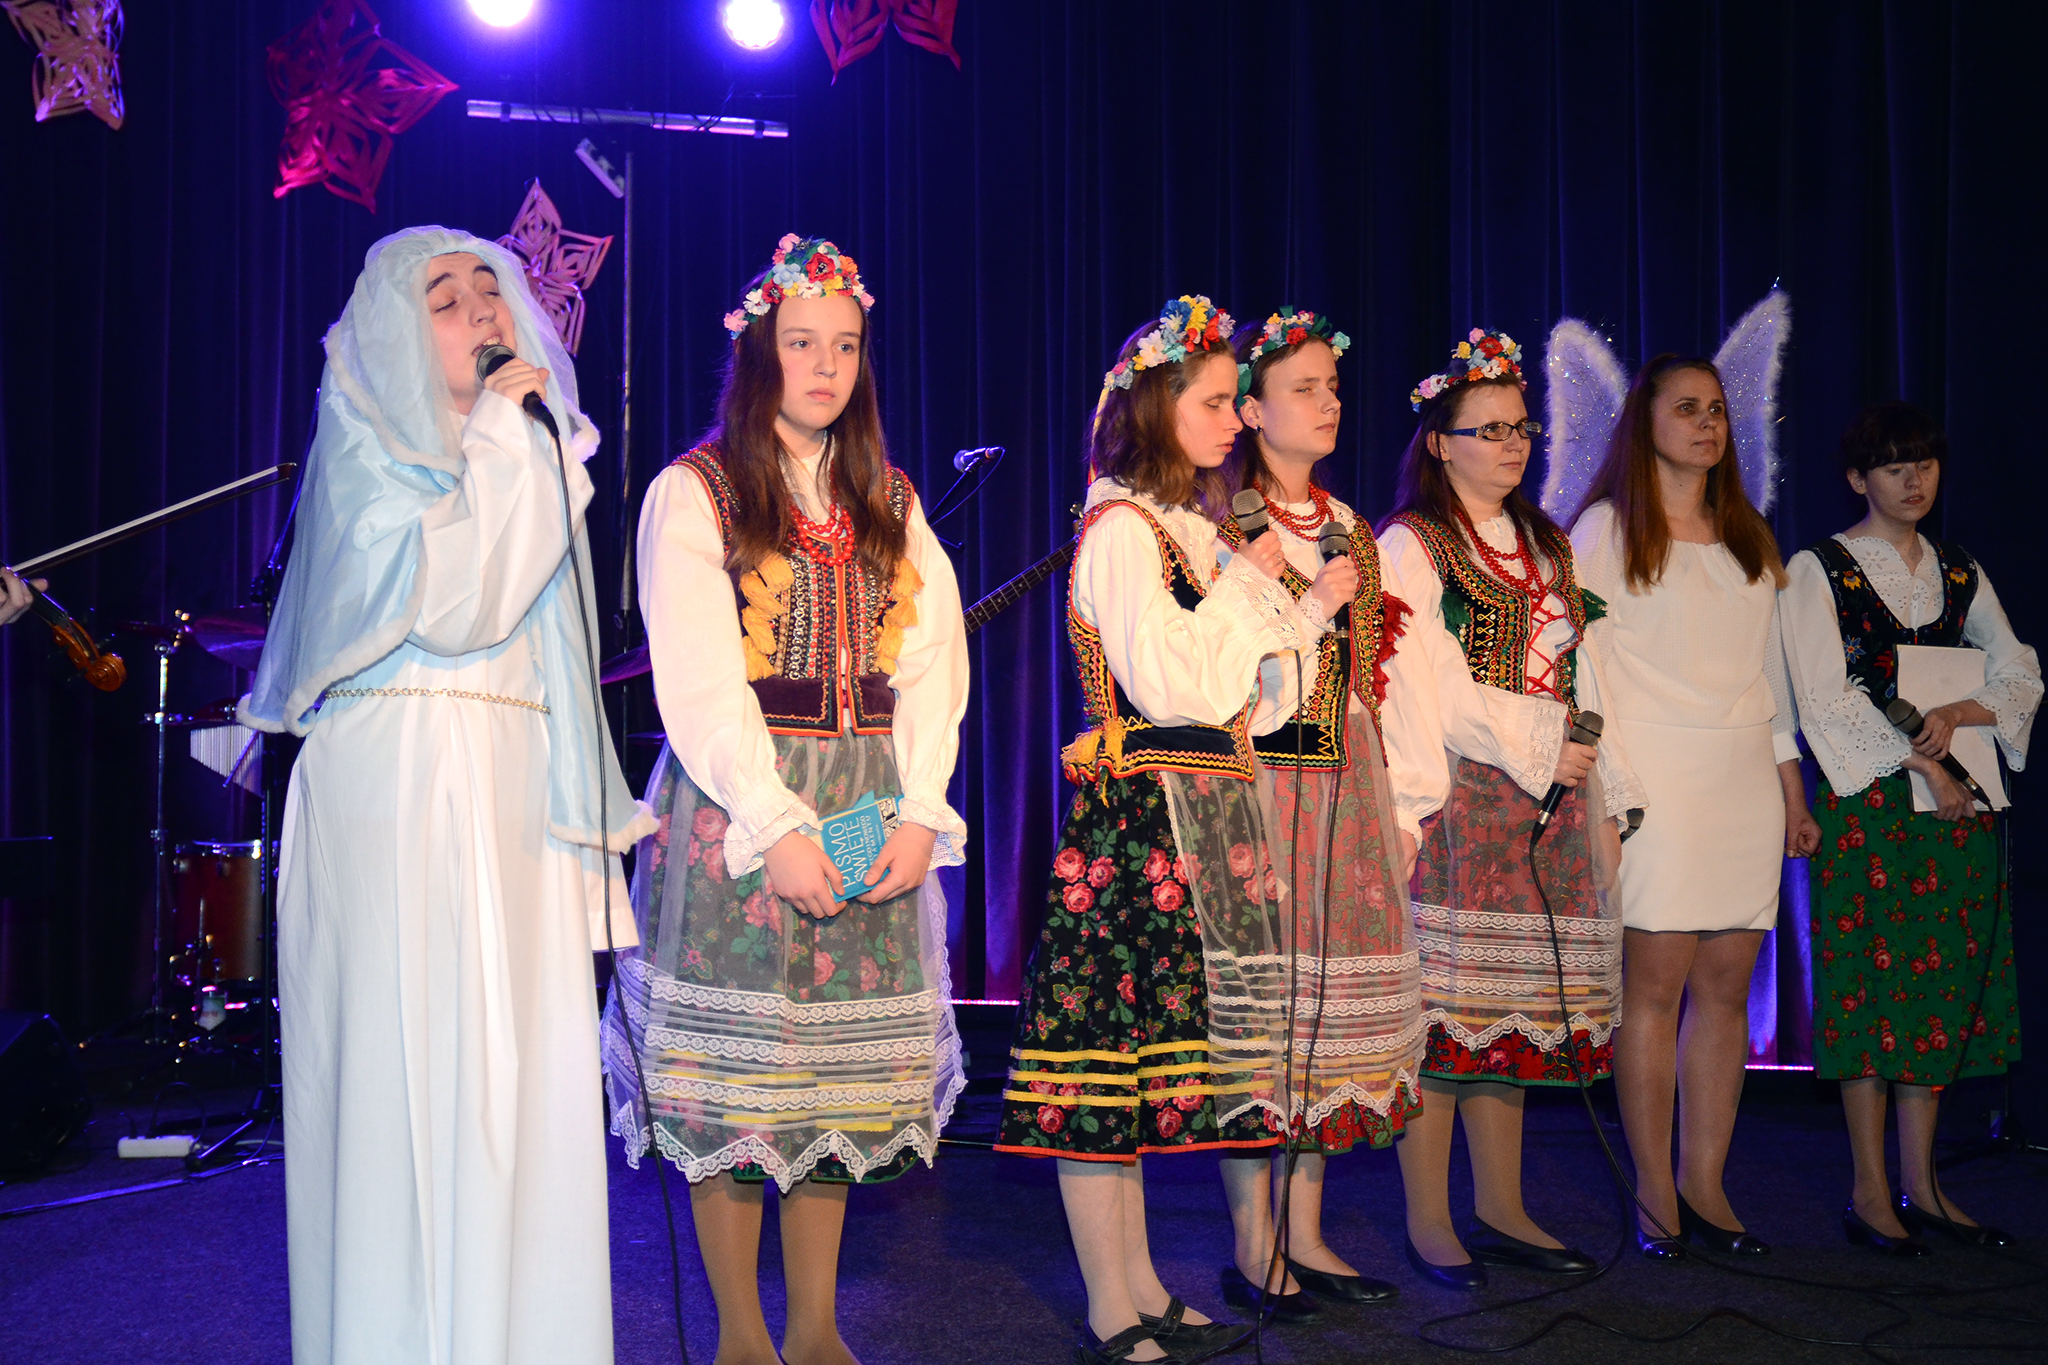 Śpiewająca Maryja. Obok niej stoi pięć dziewczyn w strojach krakowskich i Prezes Fundacji w stroju anioła